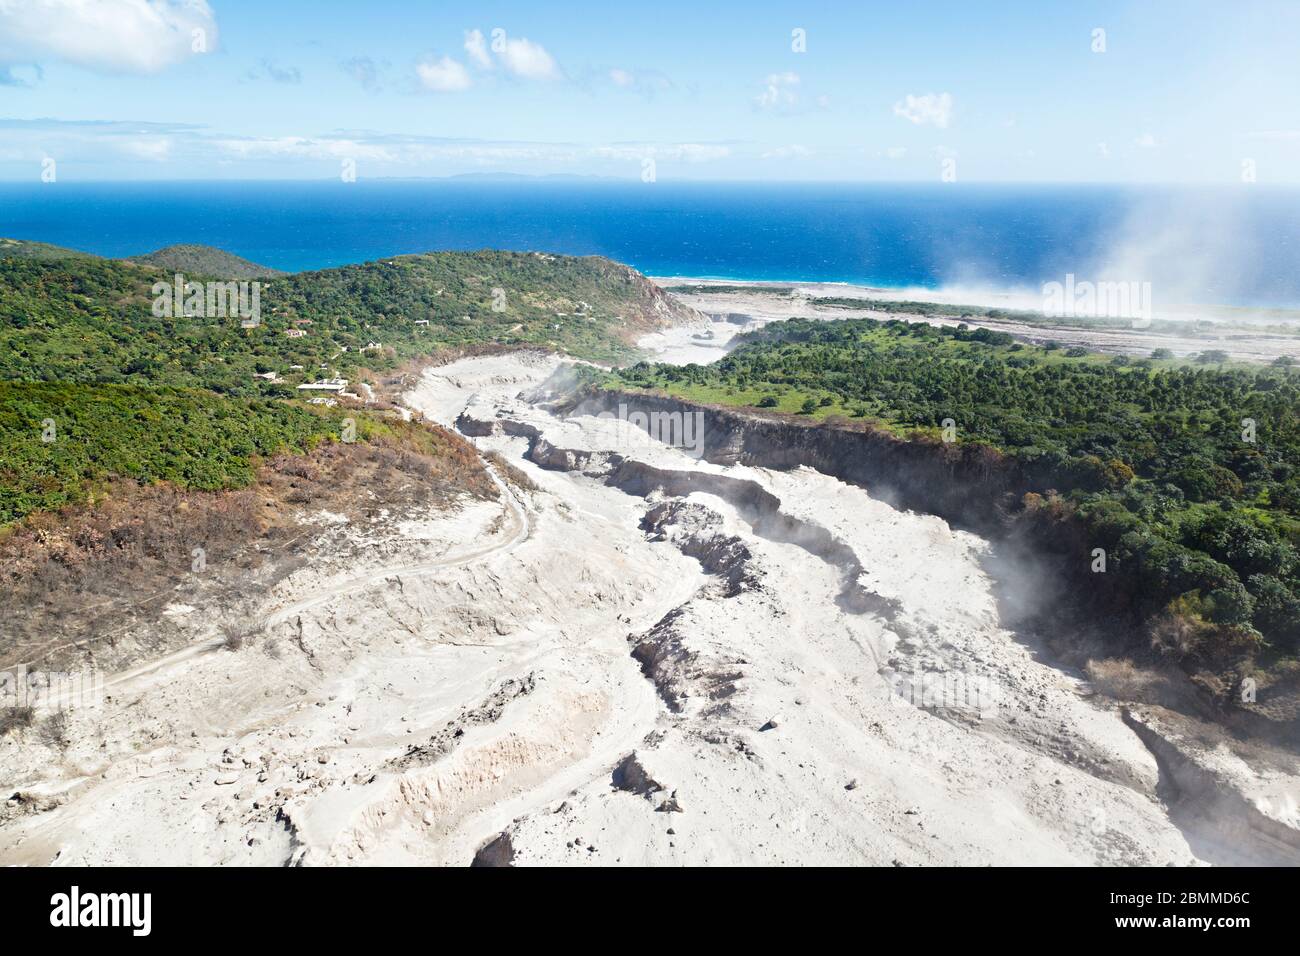 Die Überreste der jüngsten pyroklastischen Strömungen des Vulkans Soufriere Hills an der Ostküste von Montserrat. Luftaufnahme aus dem Hubschrauber. Stockfoto